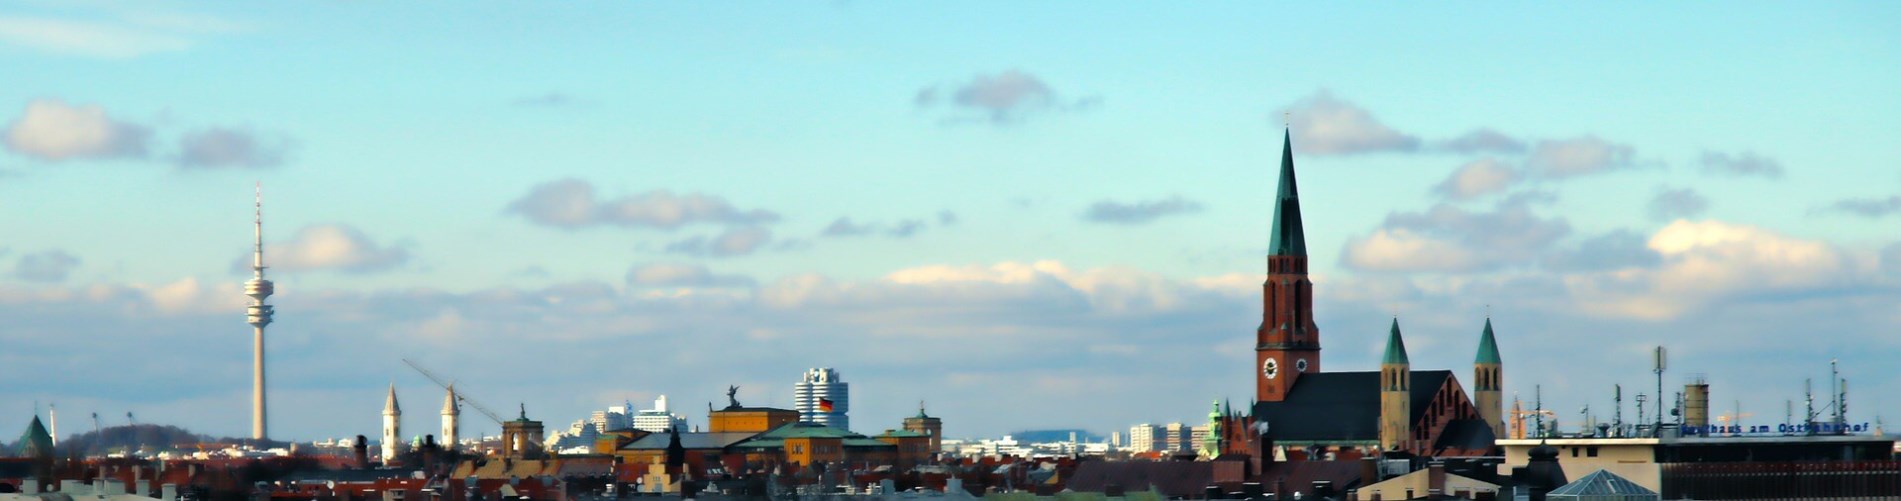 Muenchen-Skyline.jpg